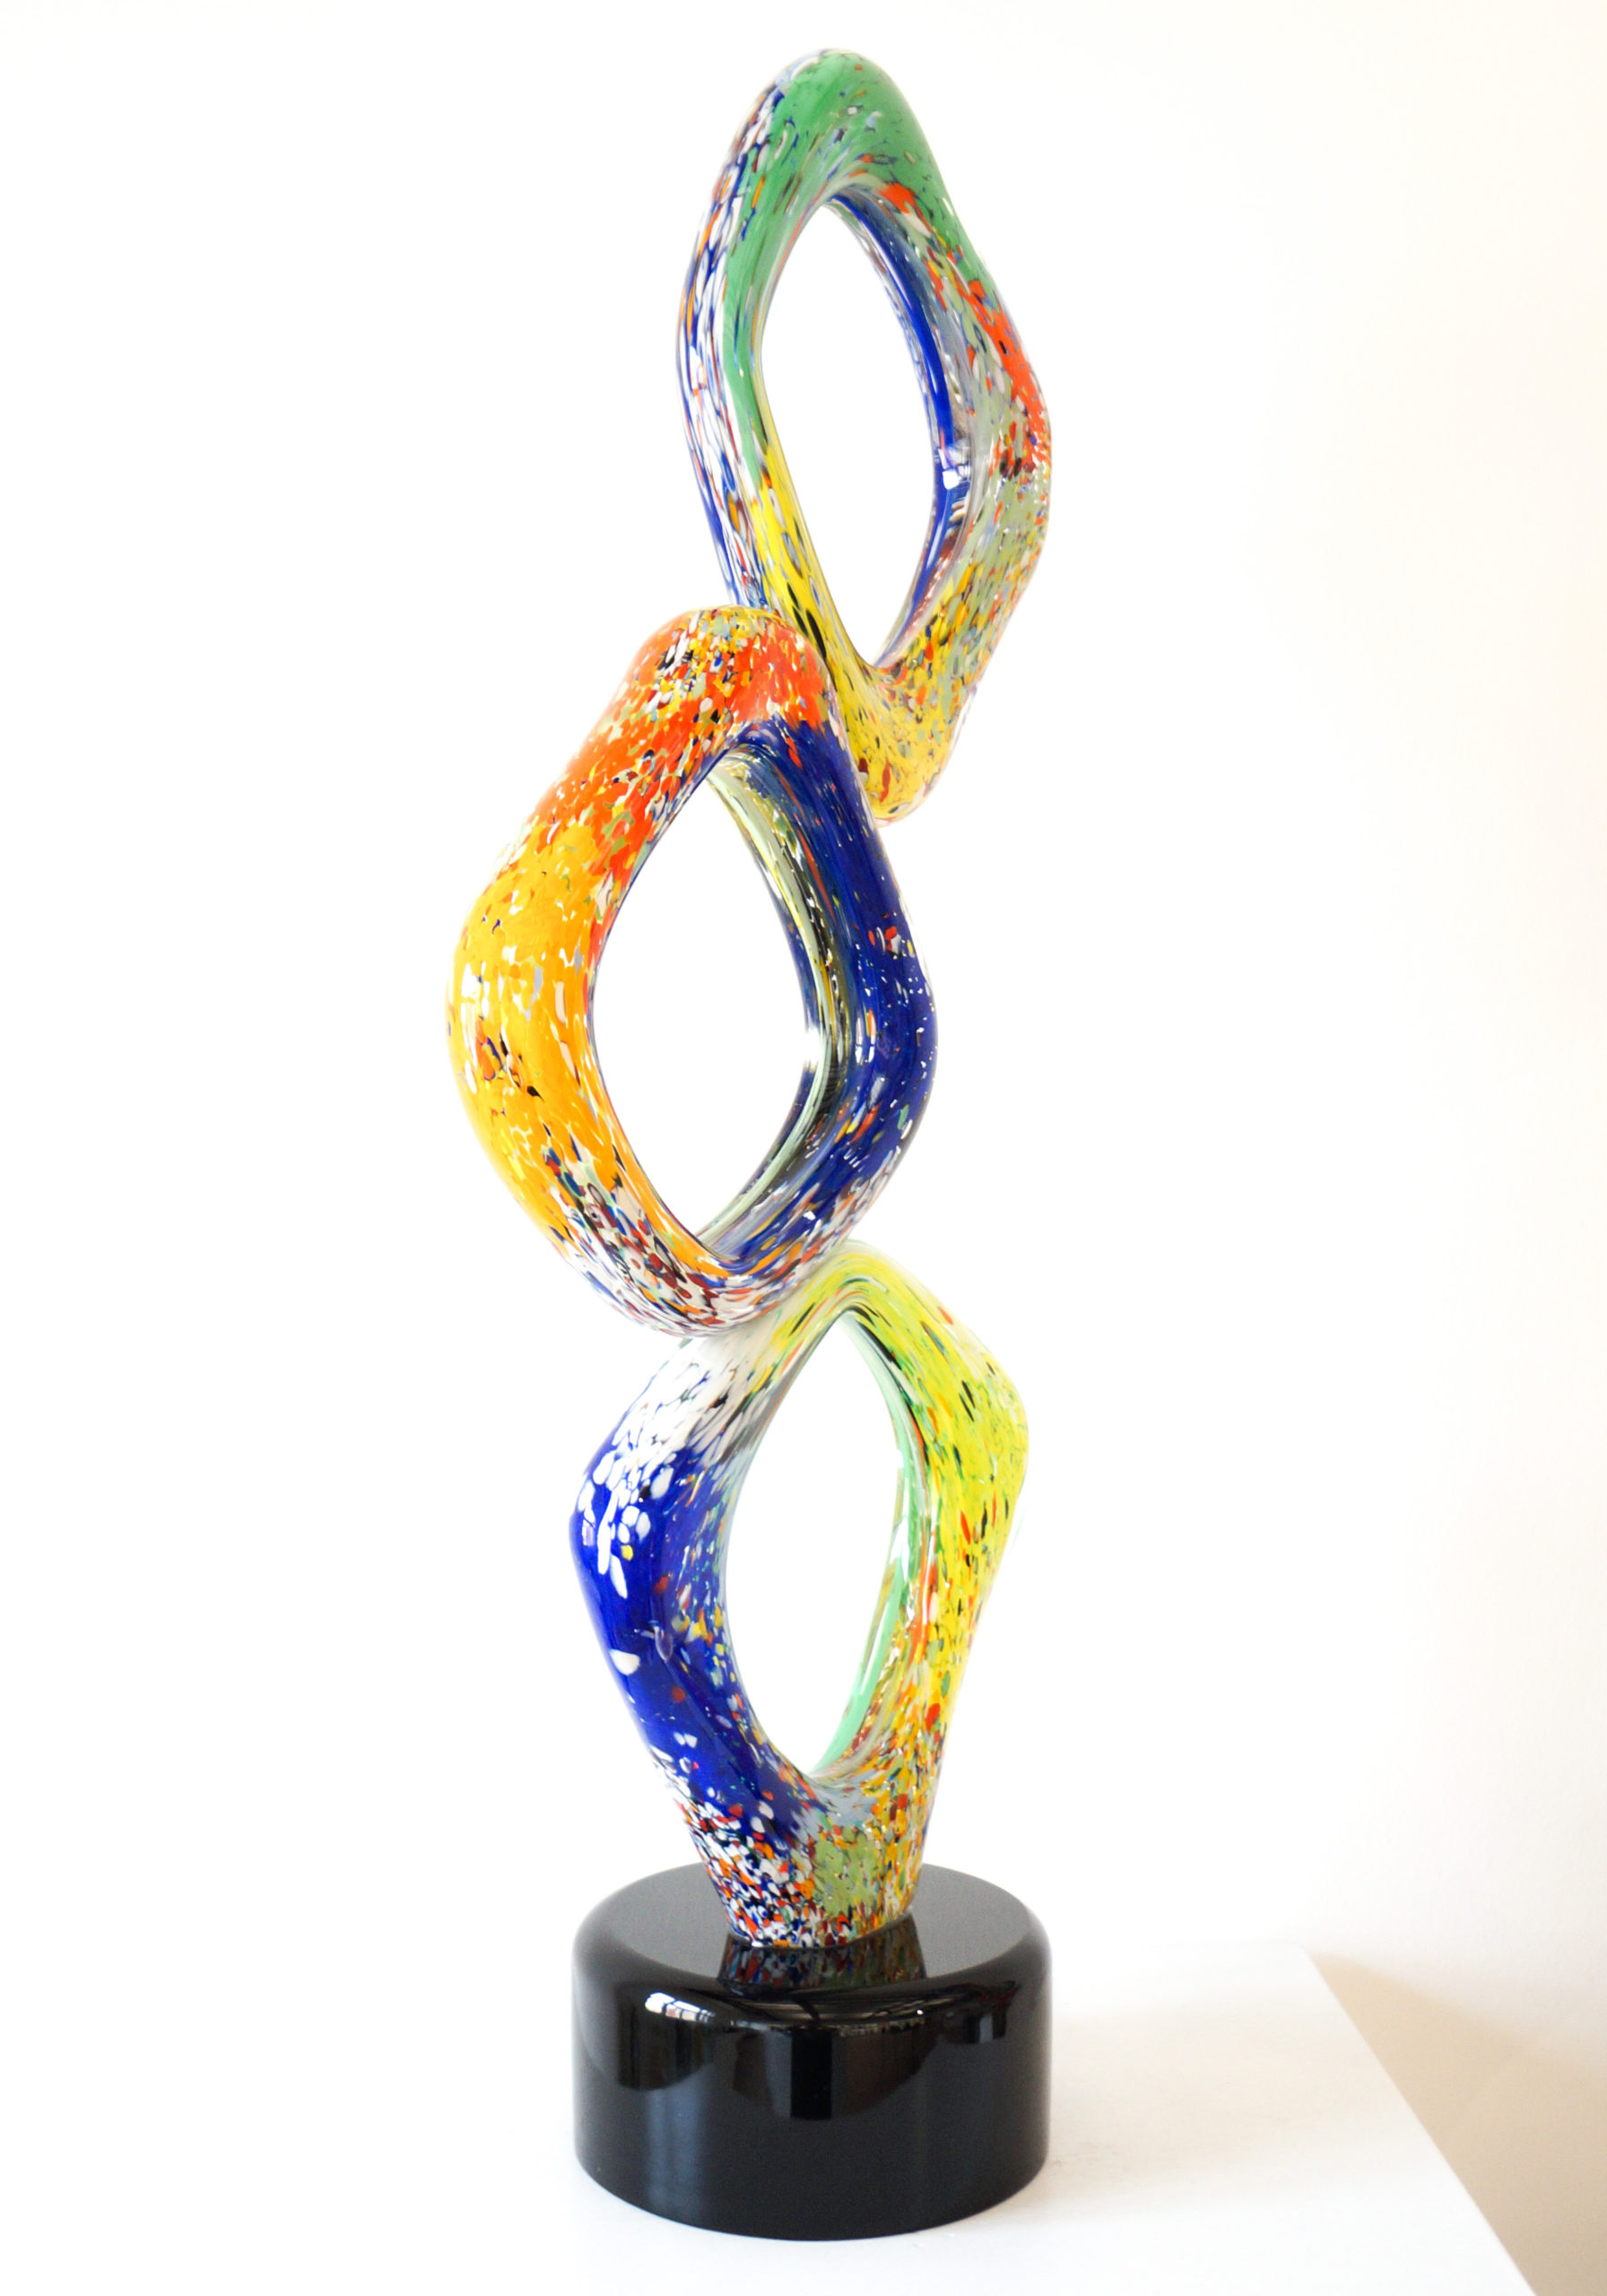 Cone - Multicolored Abstract Sculpture In Murano Glass